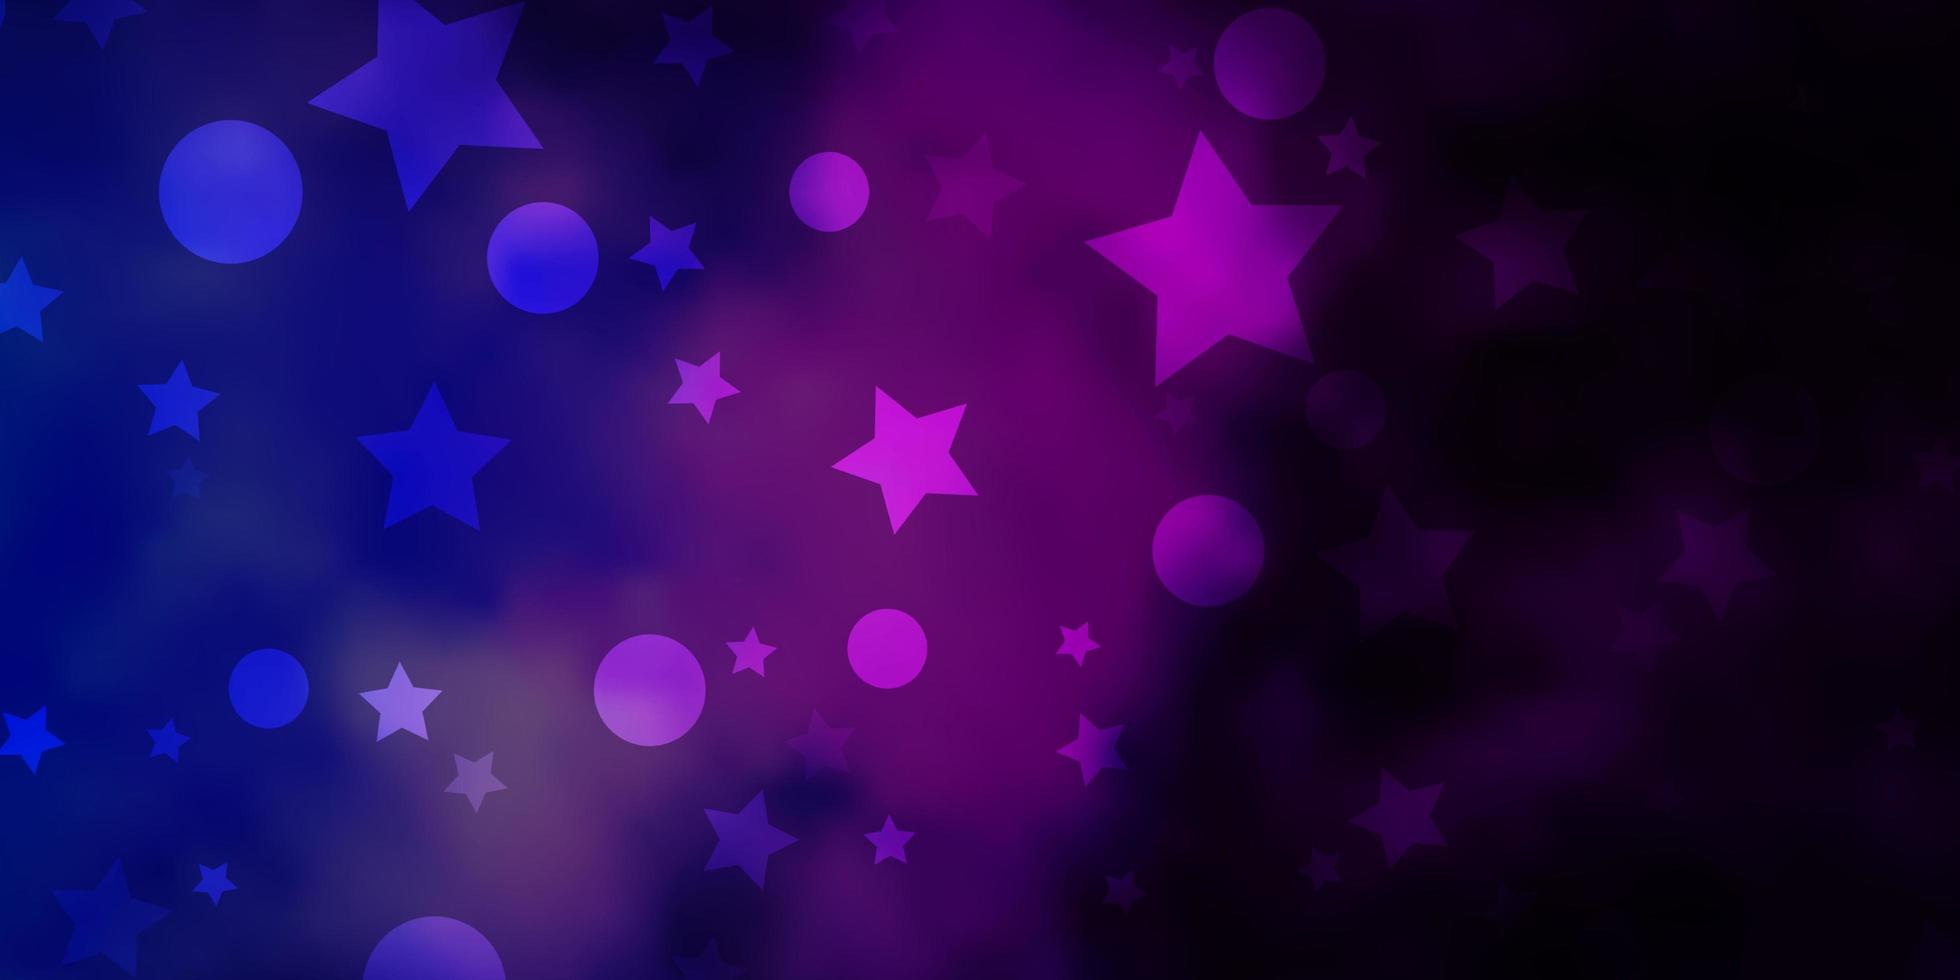 layout de vetor rosa escuro, azul com círculos, estrelas. glitter ilustração abstrata com gotas coloridas, estrelas. modelo para cartões de visita, sites.